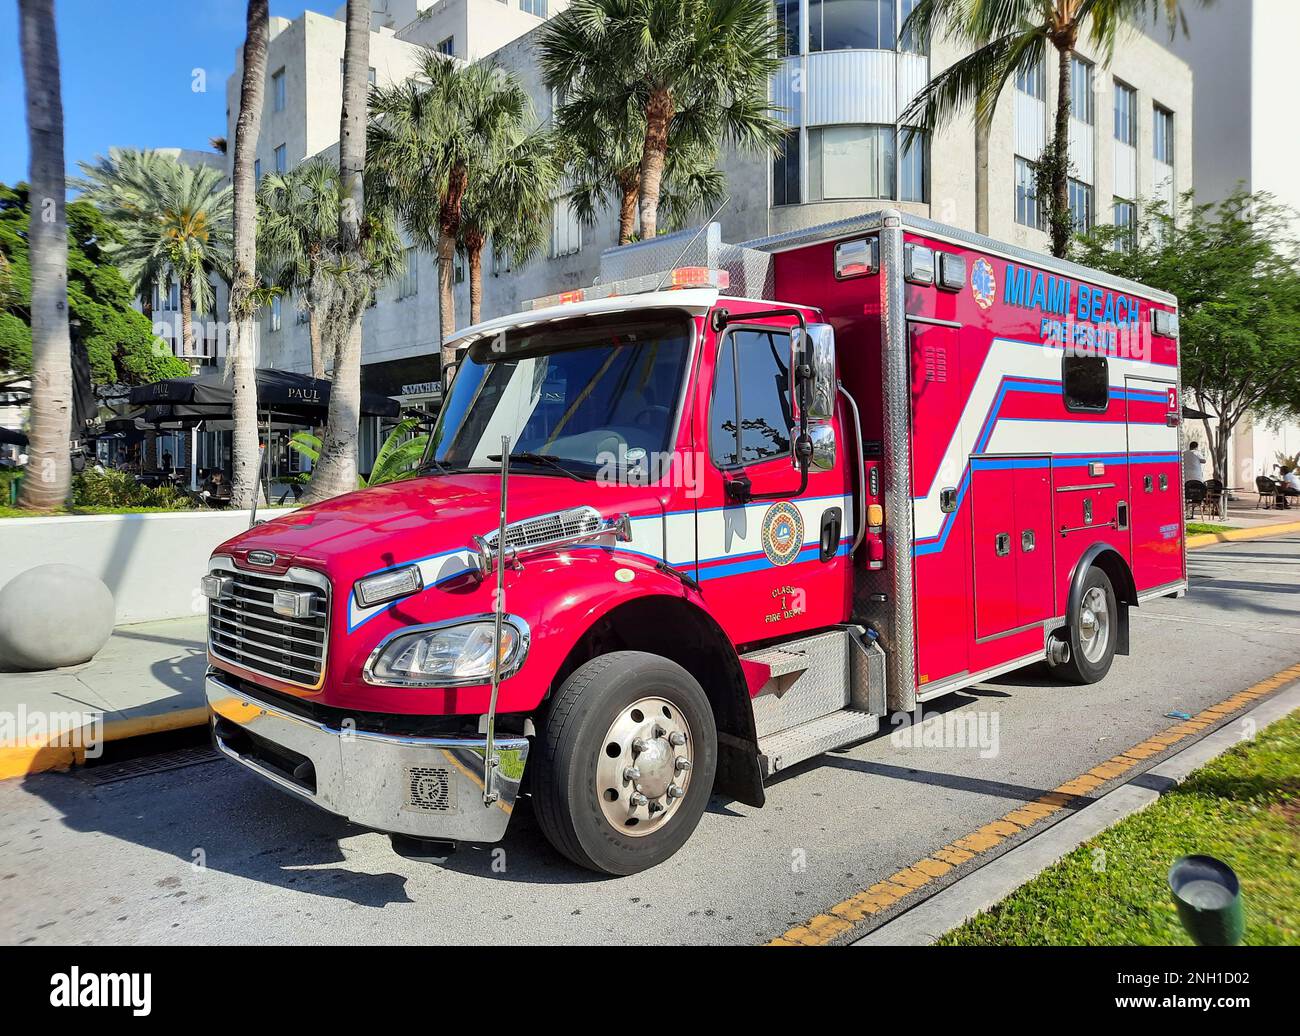 Los Angeles, California USA - March 24, 2021: red miami beach fire rescue car corner view Stock Photo